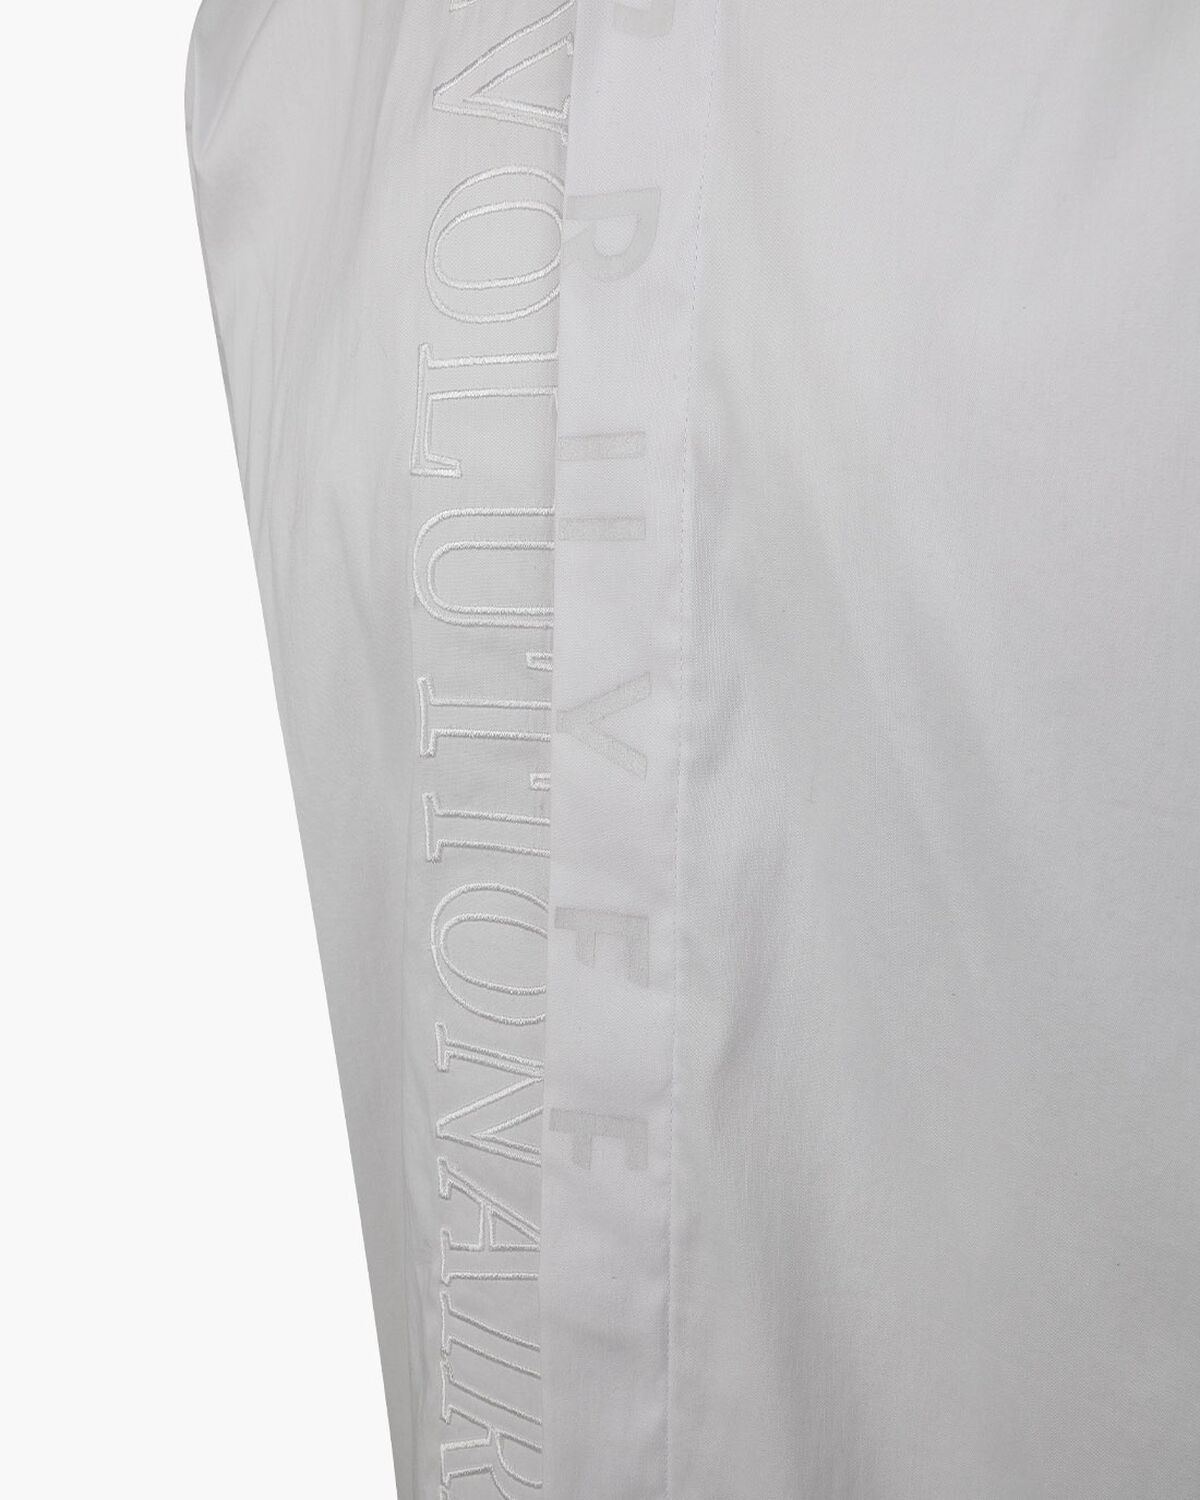 Jiron Shirt  - Cotton / Elastane, White, hi-res